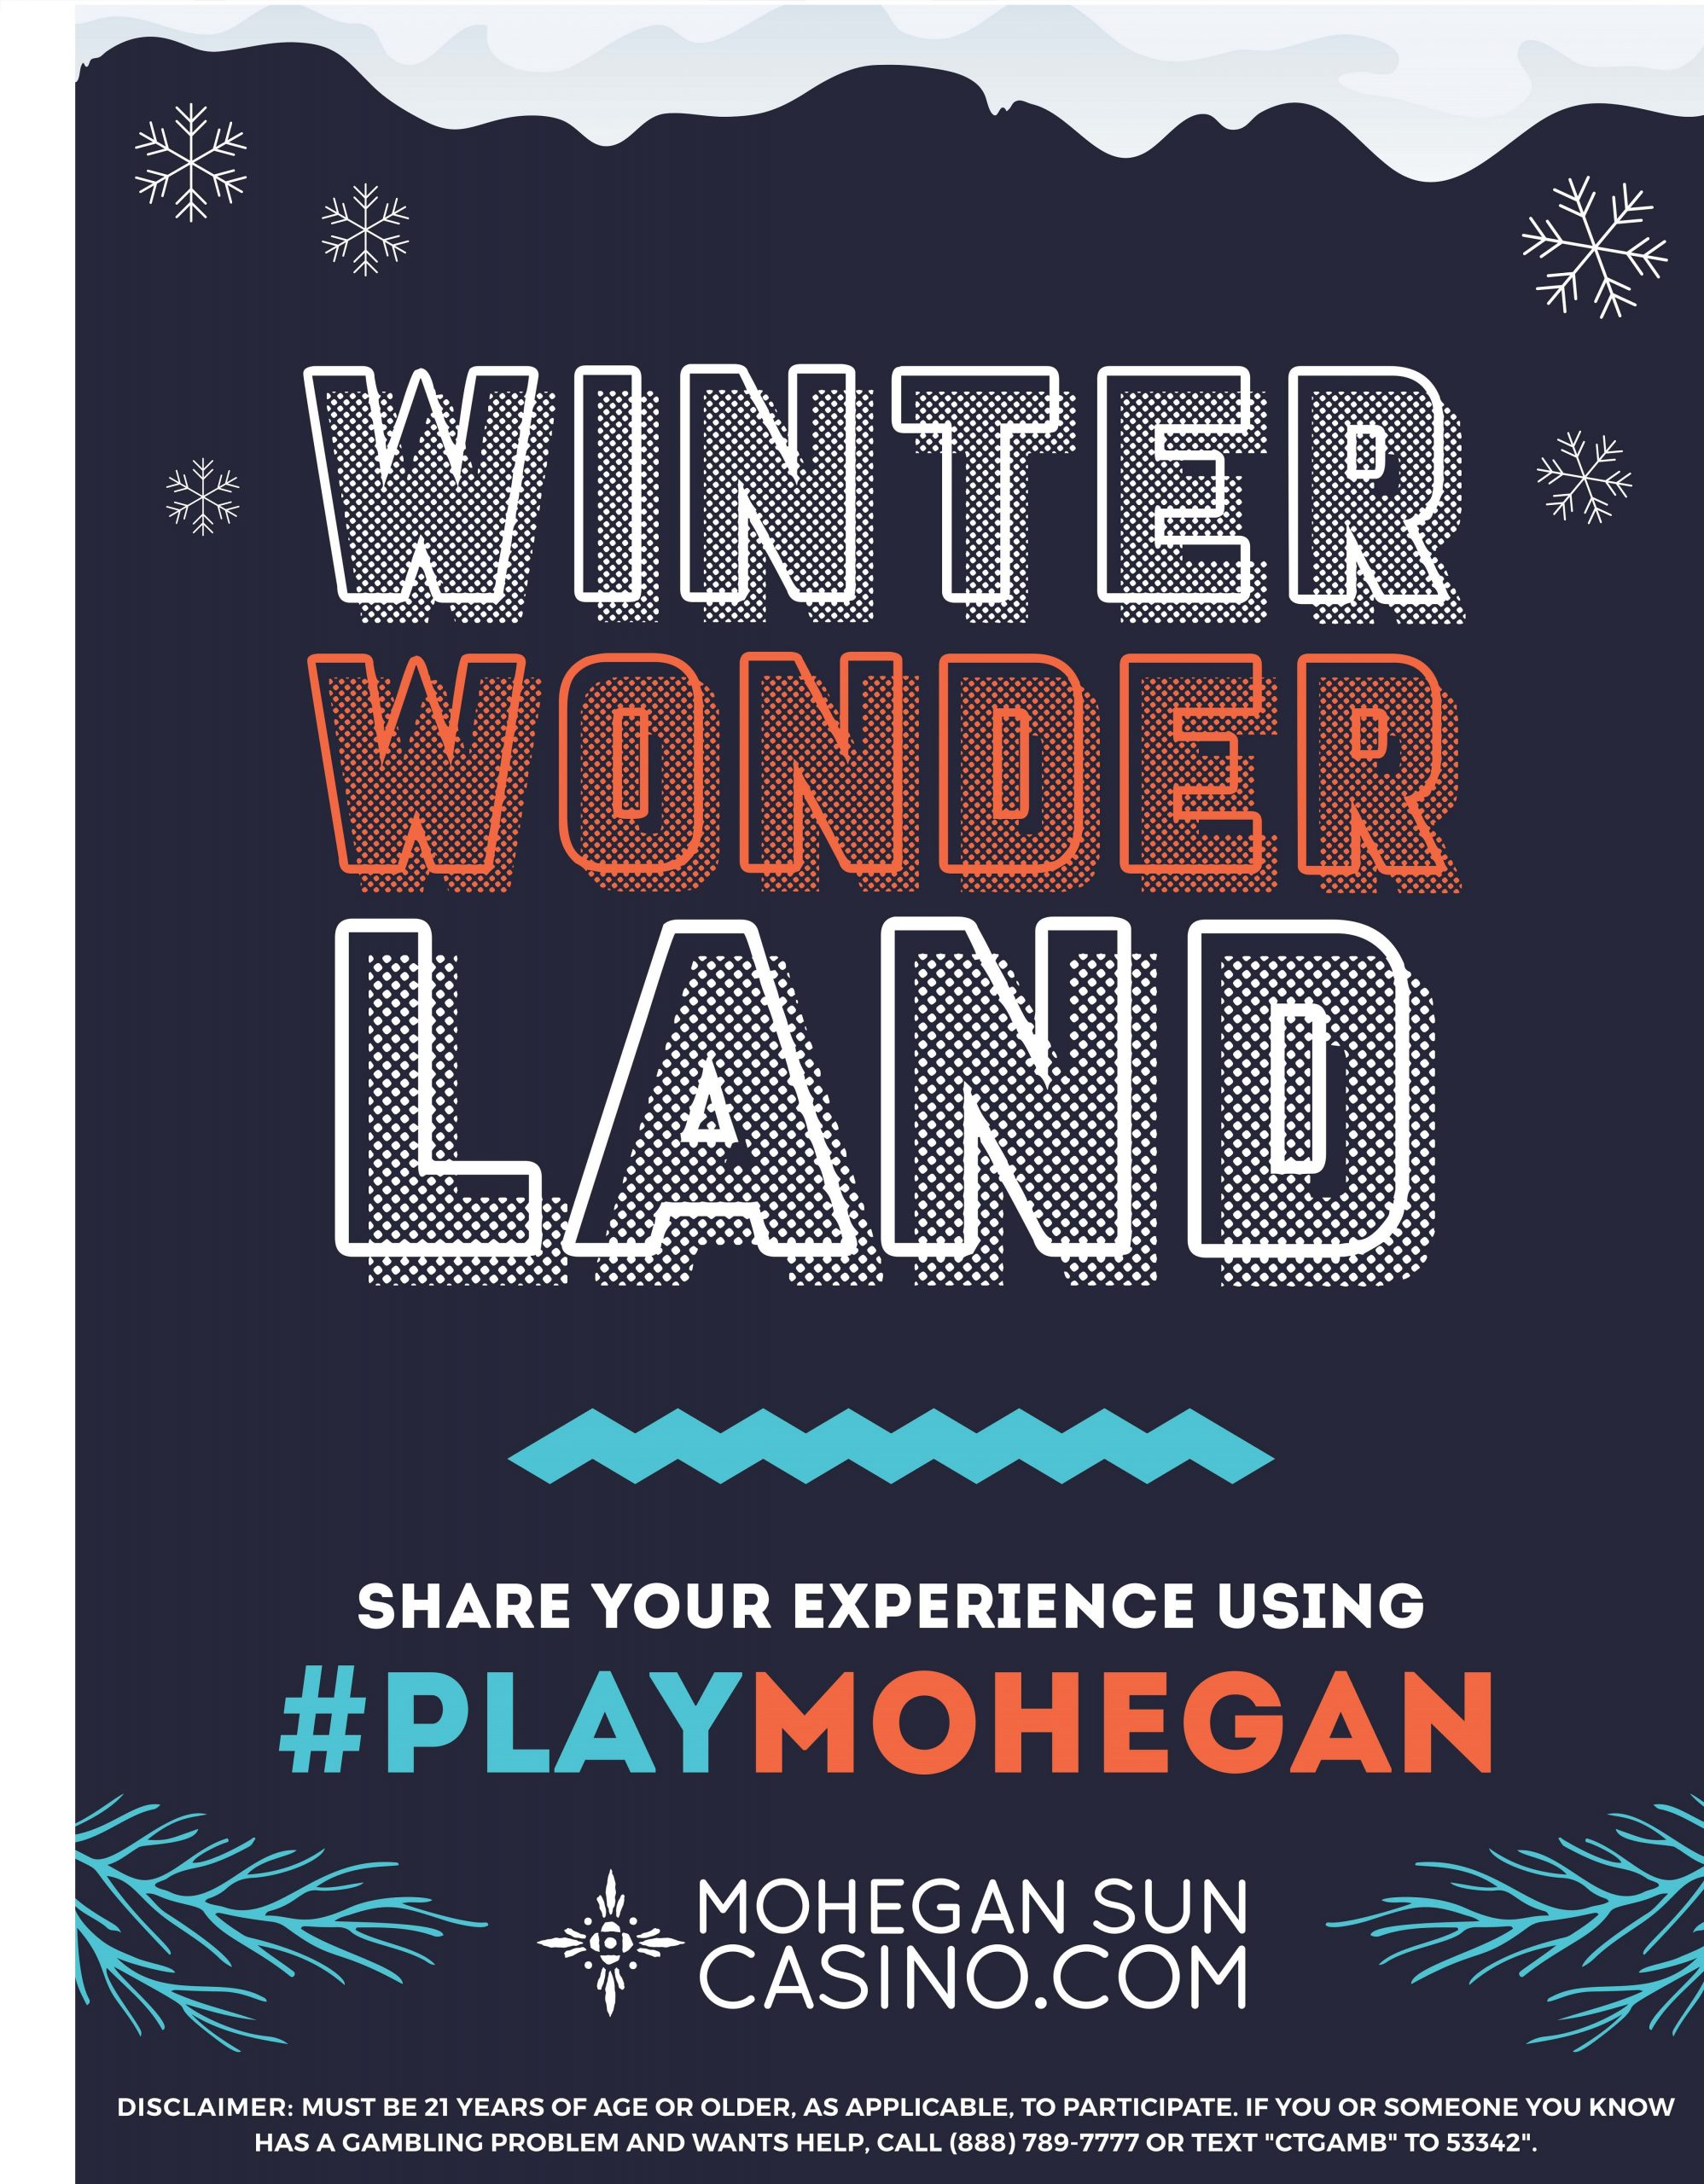 The Winter Wonderland Escape Room at Mohegan Sun Casino